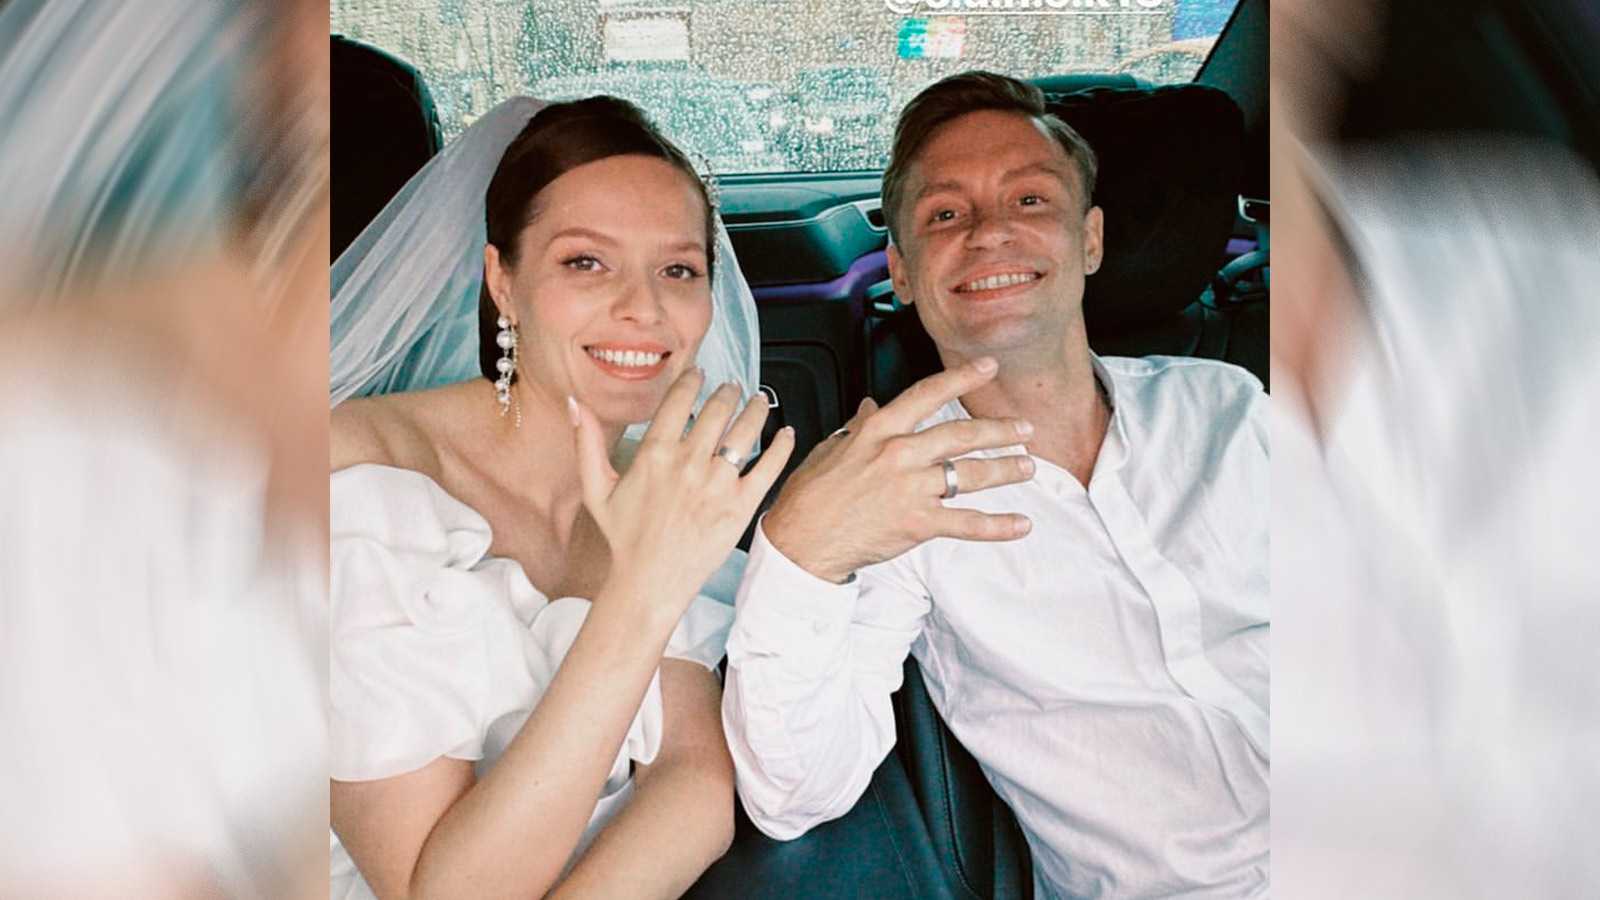 Александр петров женился! пара познакомилась на улице и быстро сыграла свадьбу